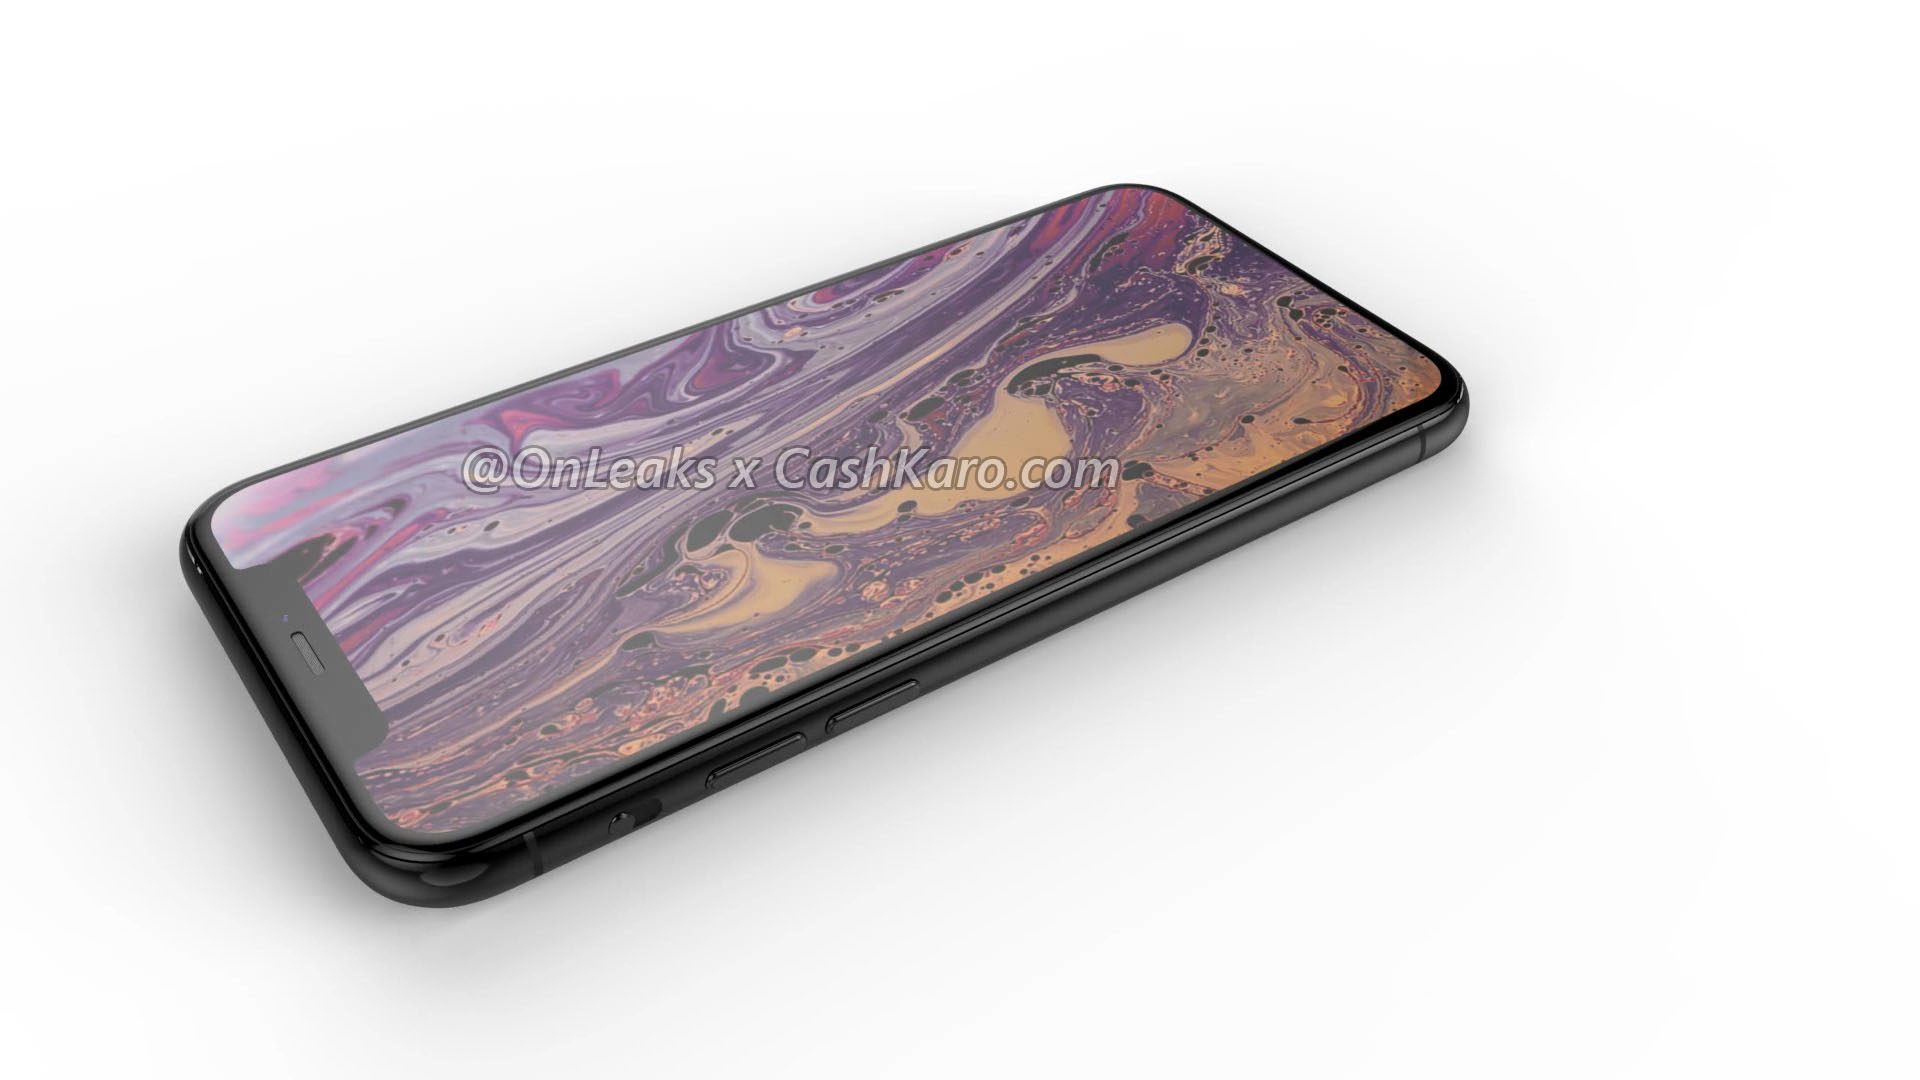 Alleged iPhone render of 2019 by OnLeaks